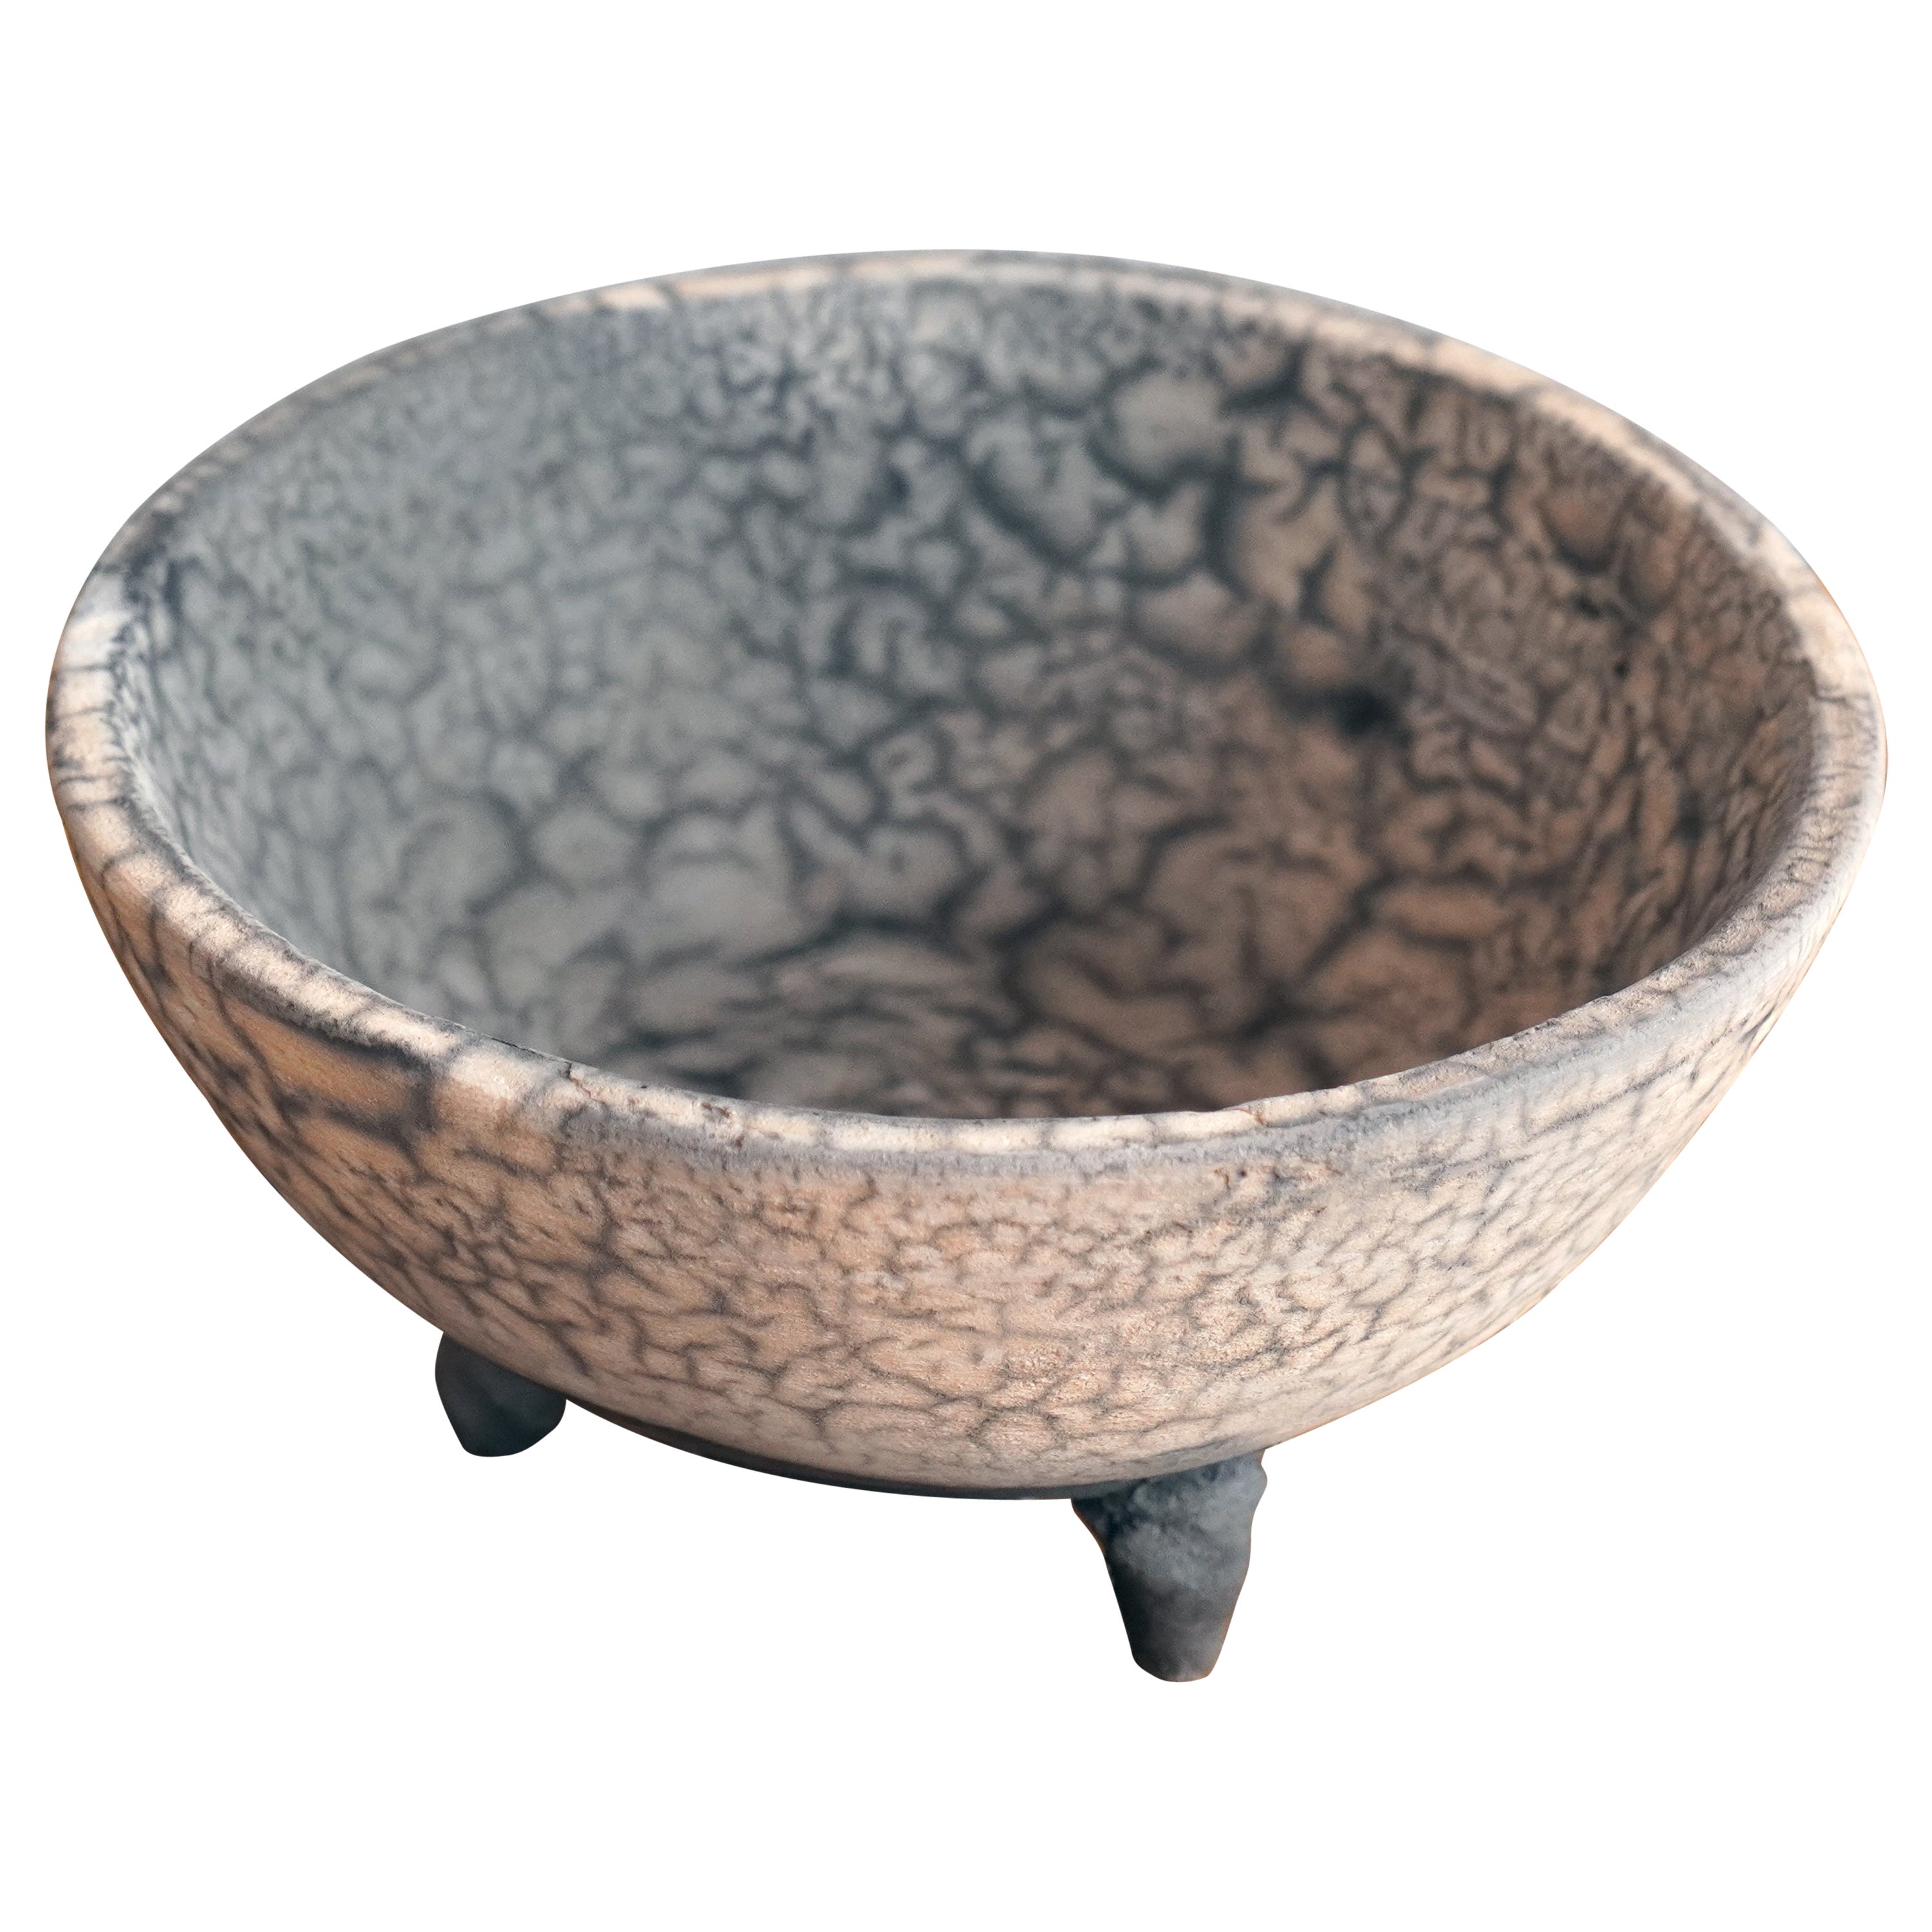 Raaquu Mizu Raku Pottery Trinket Bowl, Smoked Raku, Handmade Ceramic For Sale